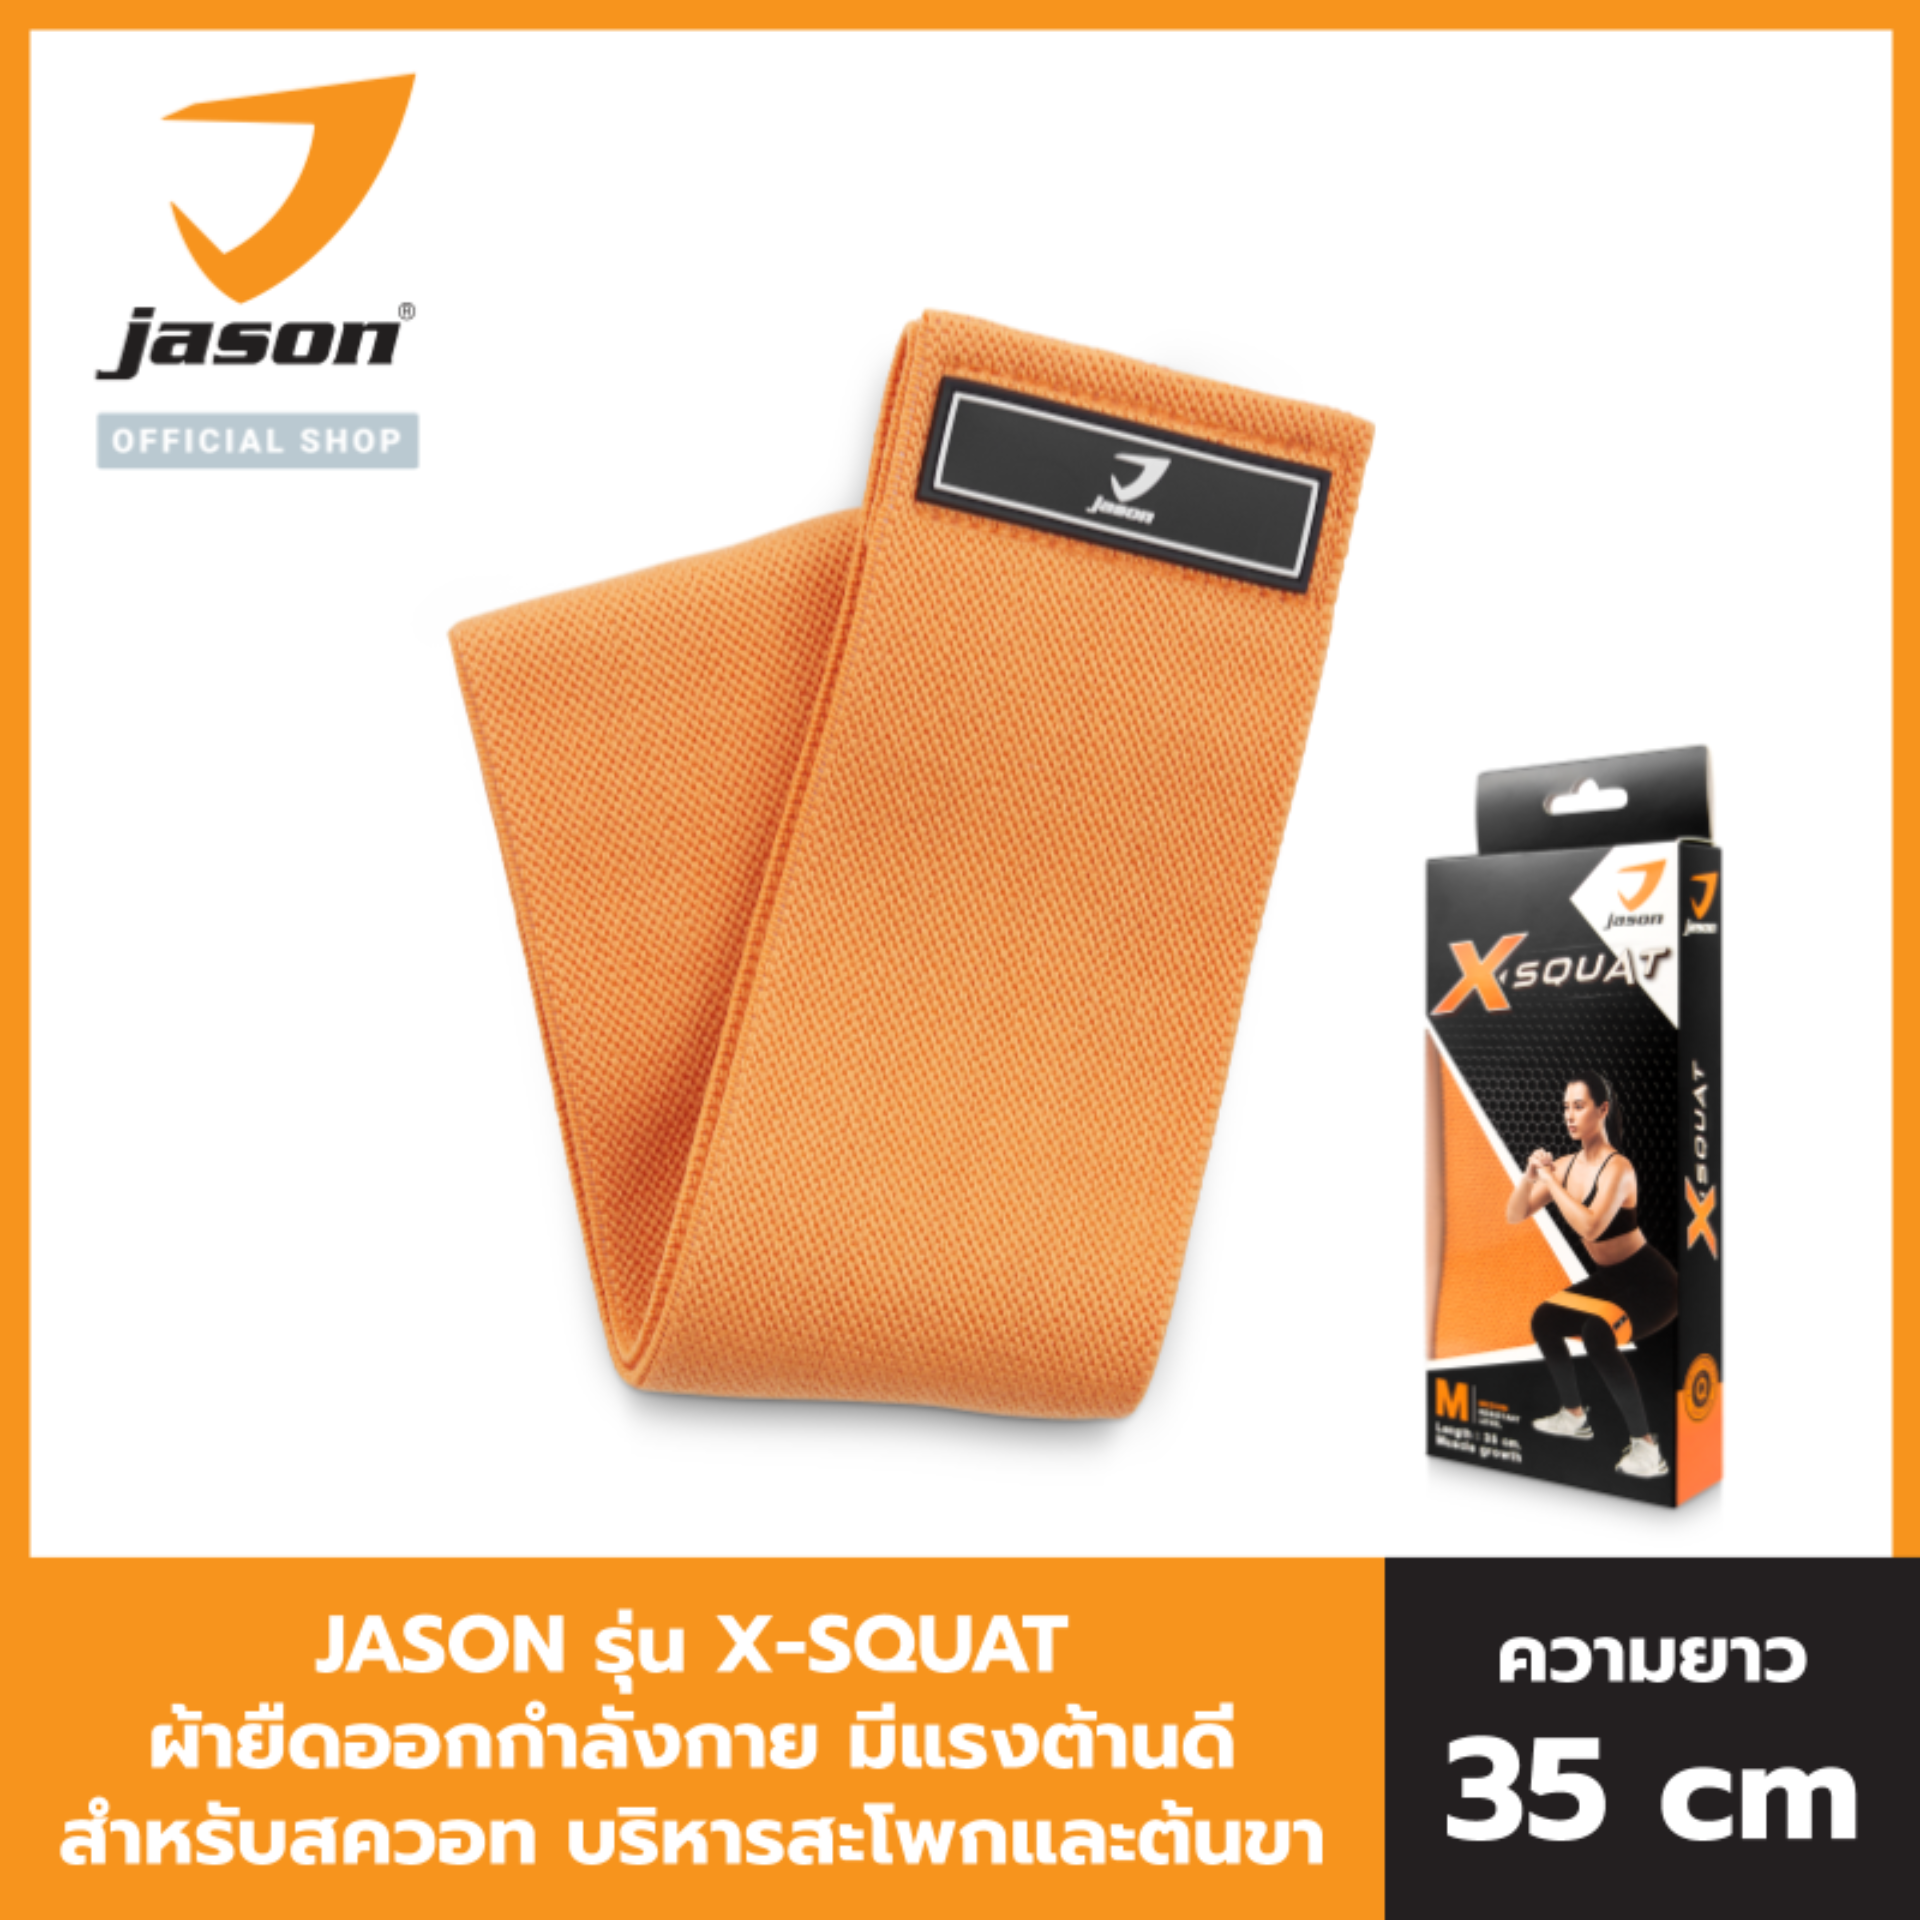 JASON เจสัน สายยืดกล้ามเนื้อ สายยืดออกกำลังกาย ต้านแรง แบบผ้า รุ่น X-SQUAT JS0567 สายยาว 35 cm. สควอท บริหารก้น และขา